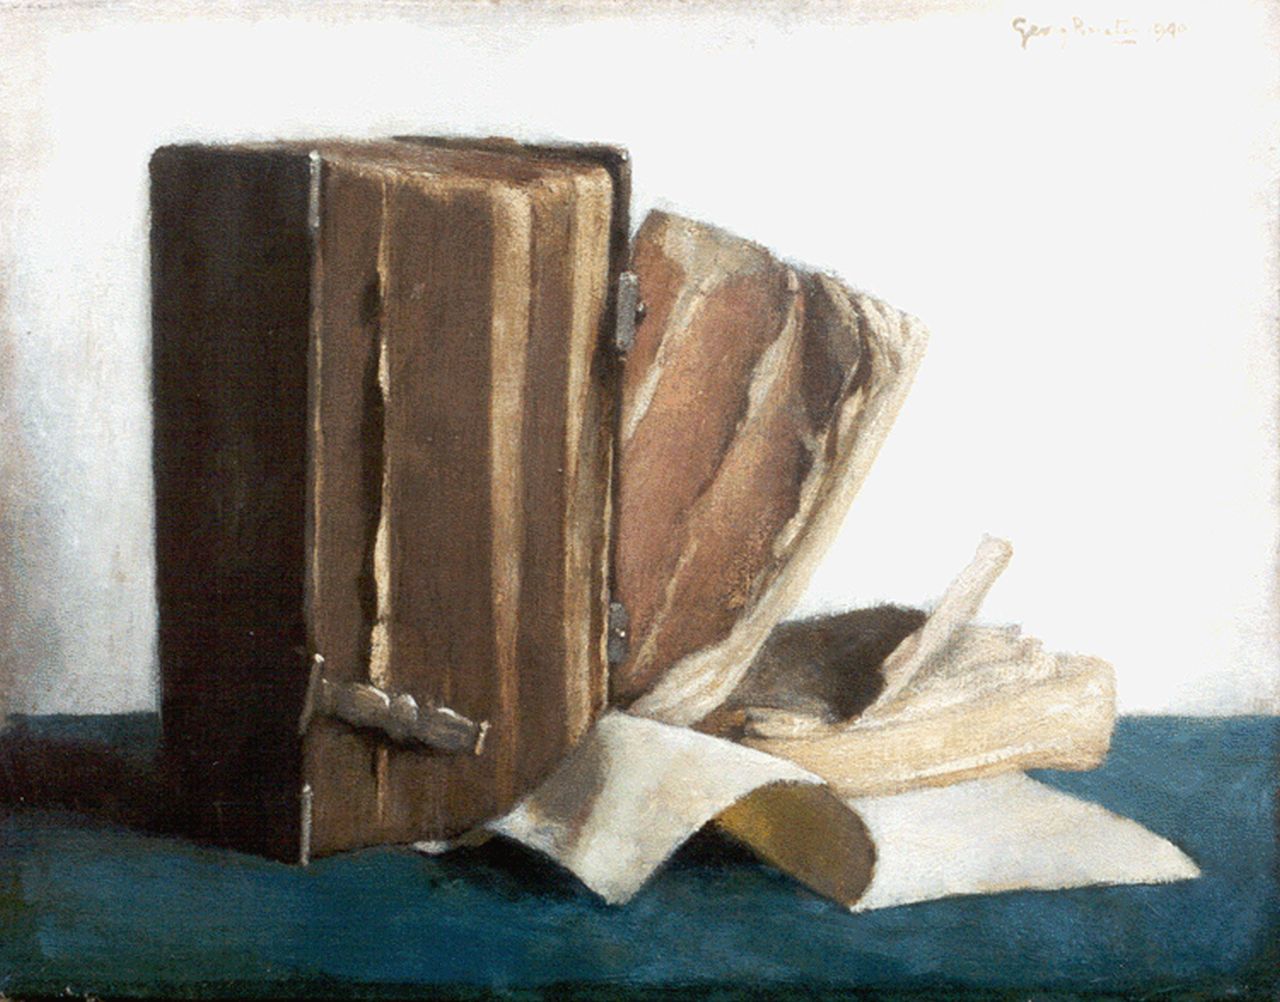 Rueter W.C.G.  | Wilhelm Christian 'Georg' Rueter, Oude boeken, olieverf op doek 28,4 x 36,2 cm, gesigneerd rechtsboven en gedateerd 1940